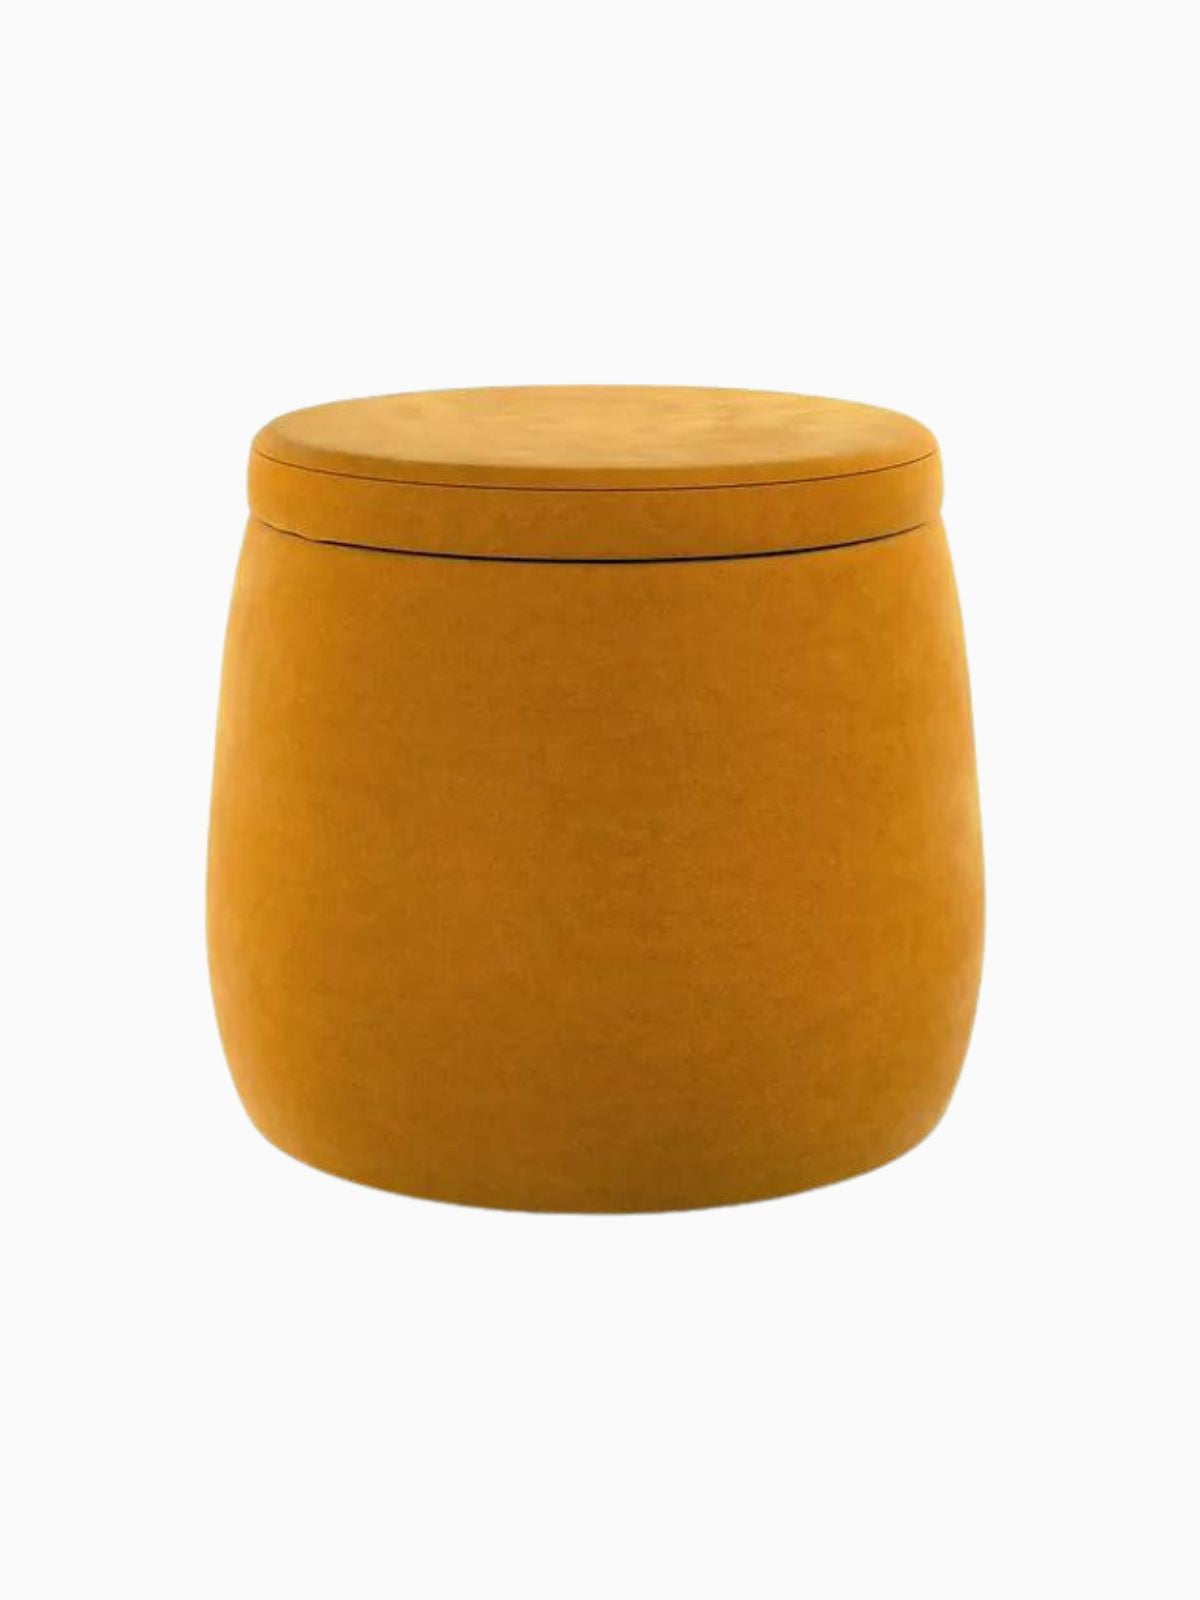 Pouf contenitore Candy Jar in velluto, colore giallo senape 40x40 cm.-1